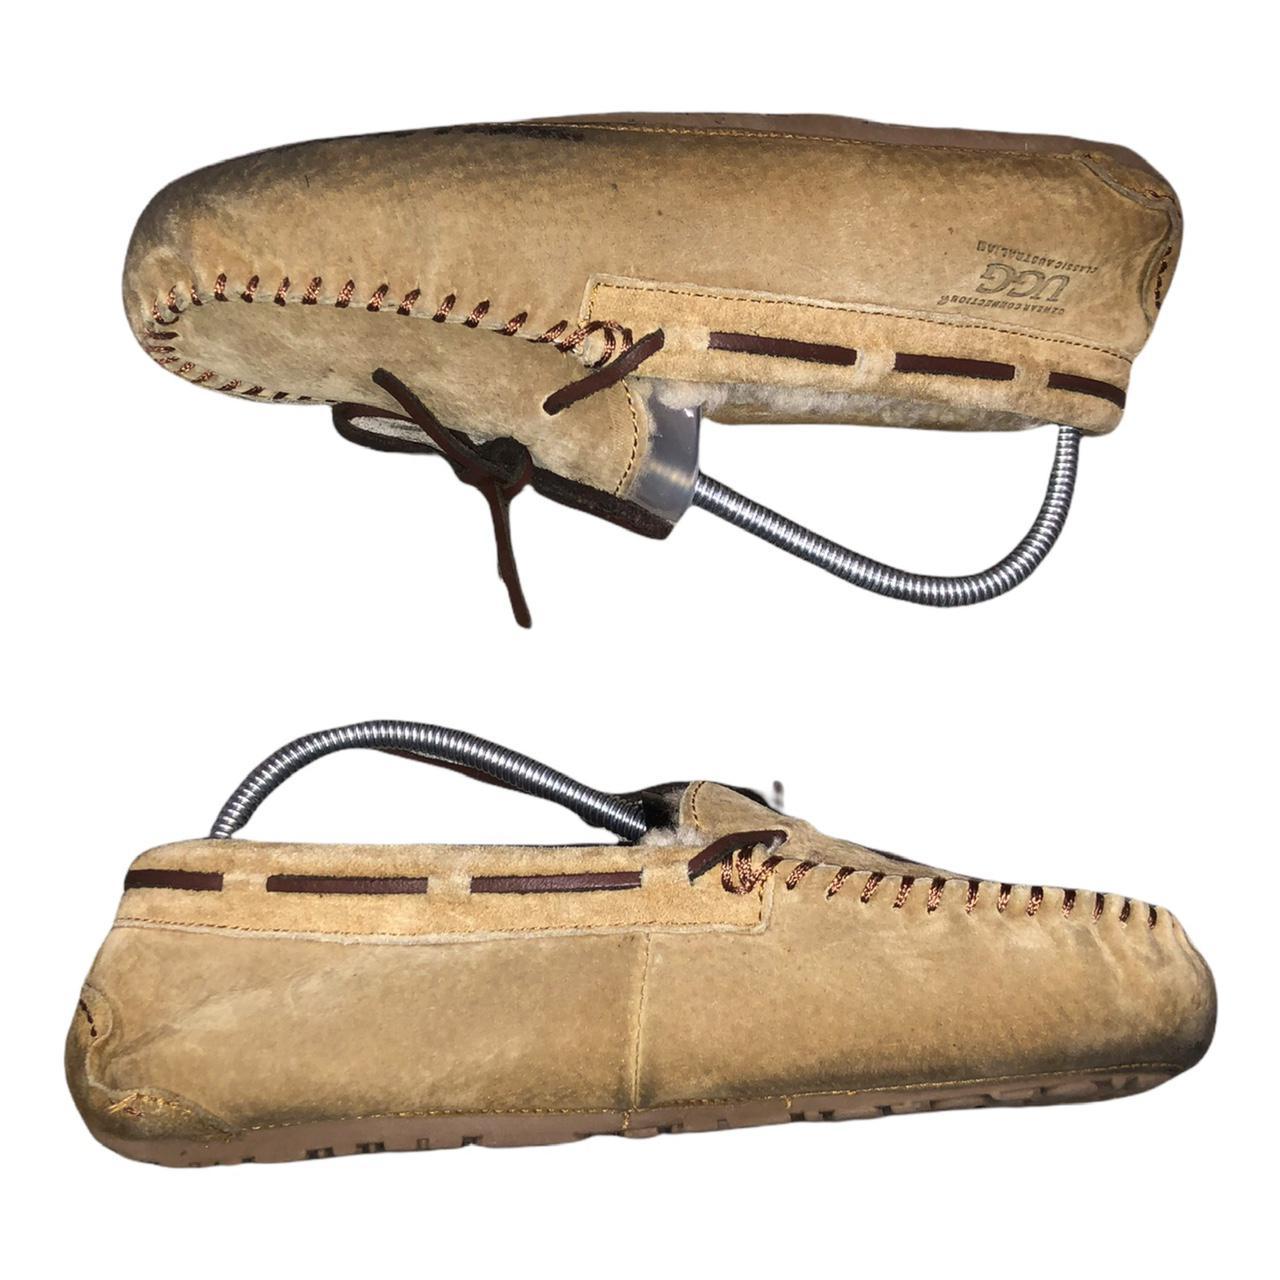 Product Image 3 - UGG Women's Dakota Moccasin Slippers
Size: